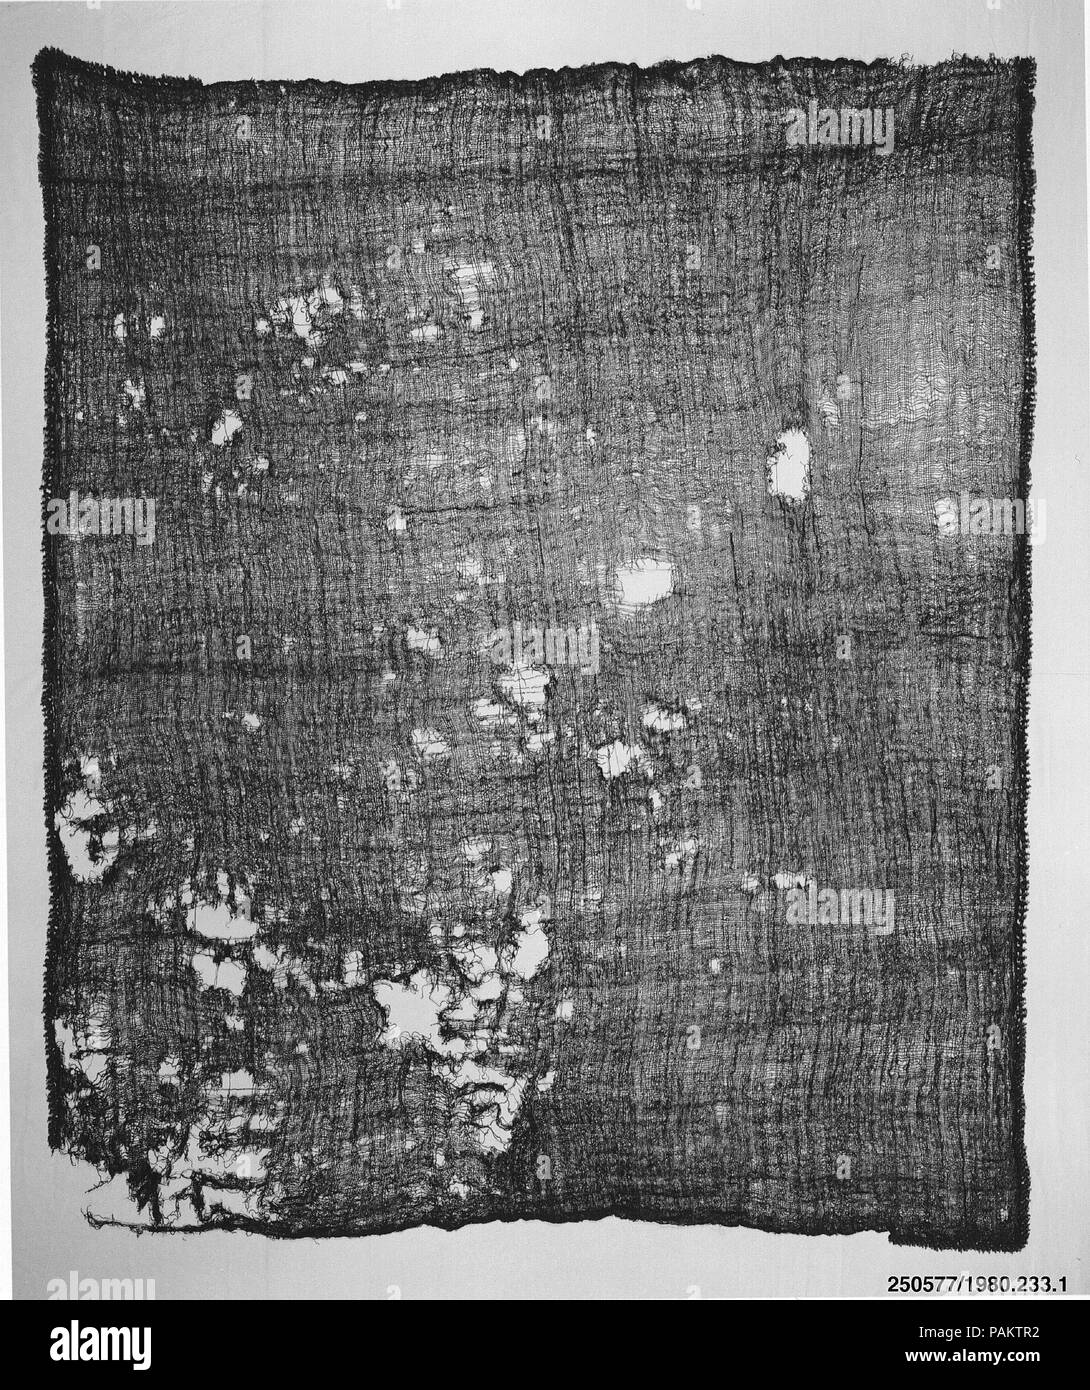 Manteau. Culture : Nasca. Dimensions : 53 x 64 H. W. dans. (134,6 x 162,6 cm). Date : 3e-1e siècle av. J.-C.. Musée : Metropolitan Museum of Art, New York, USA. Banque D'Images